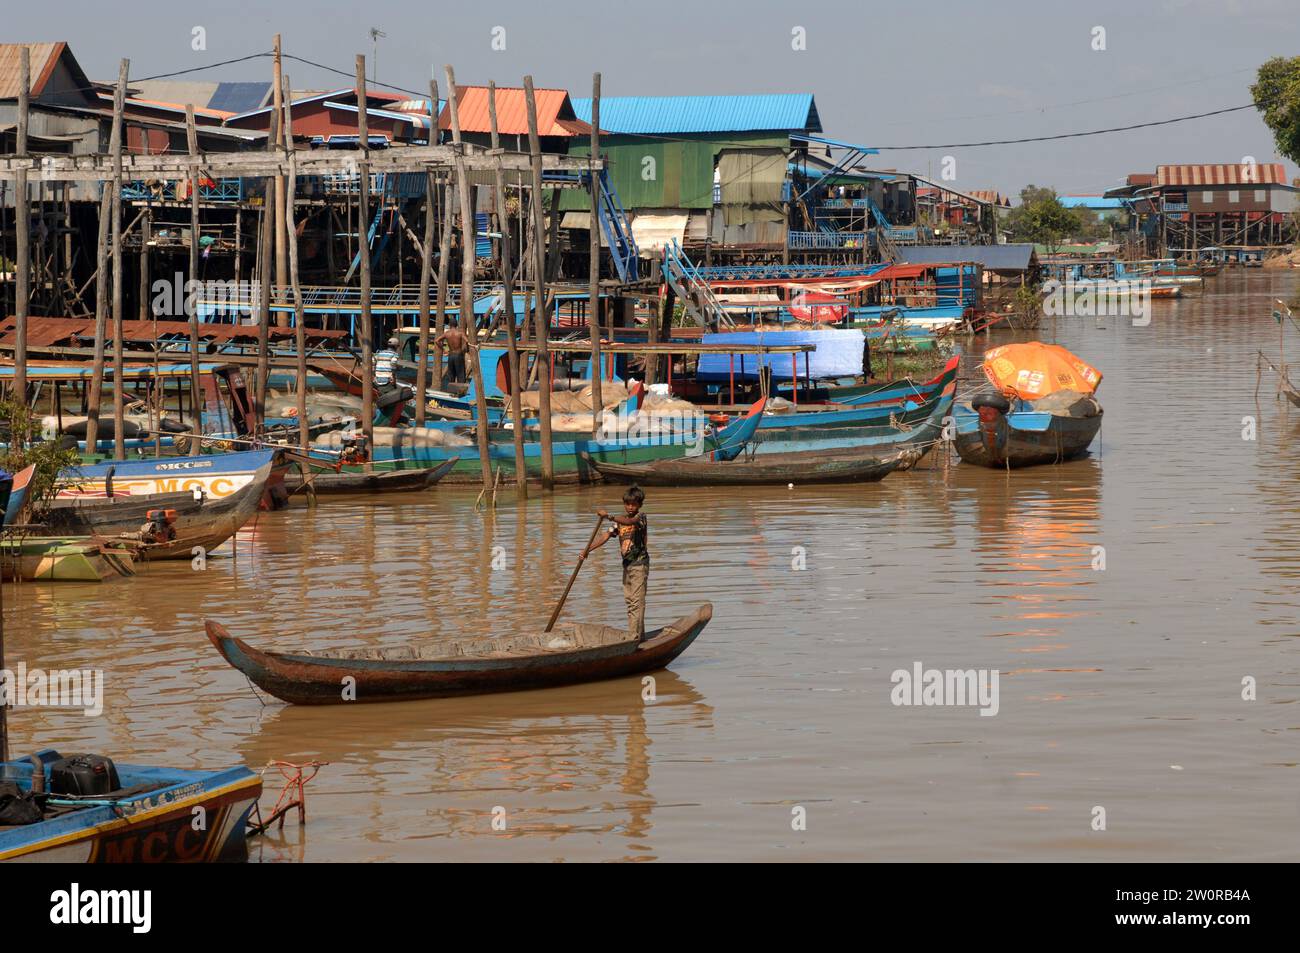 Muchacho en el pequeño barco que se mueve a lo largo de las vías fluviales, pueblo flotante Kampong Phluk en el lago Tonle Sap, Camboya, Asia. Foto de stock